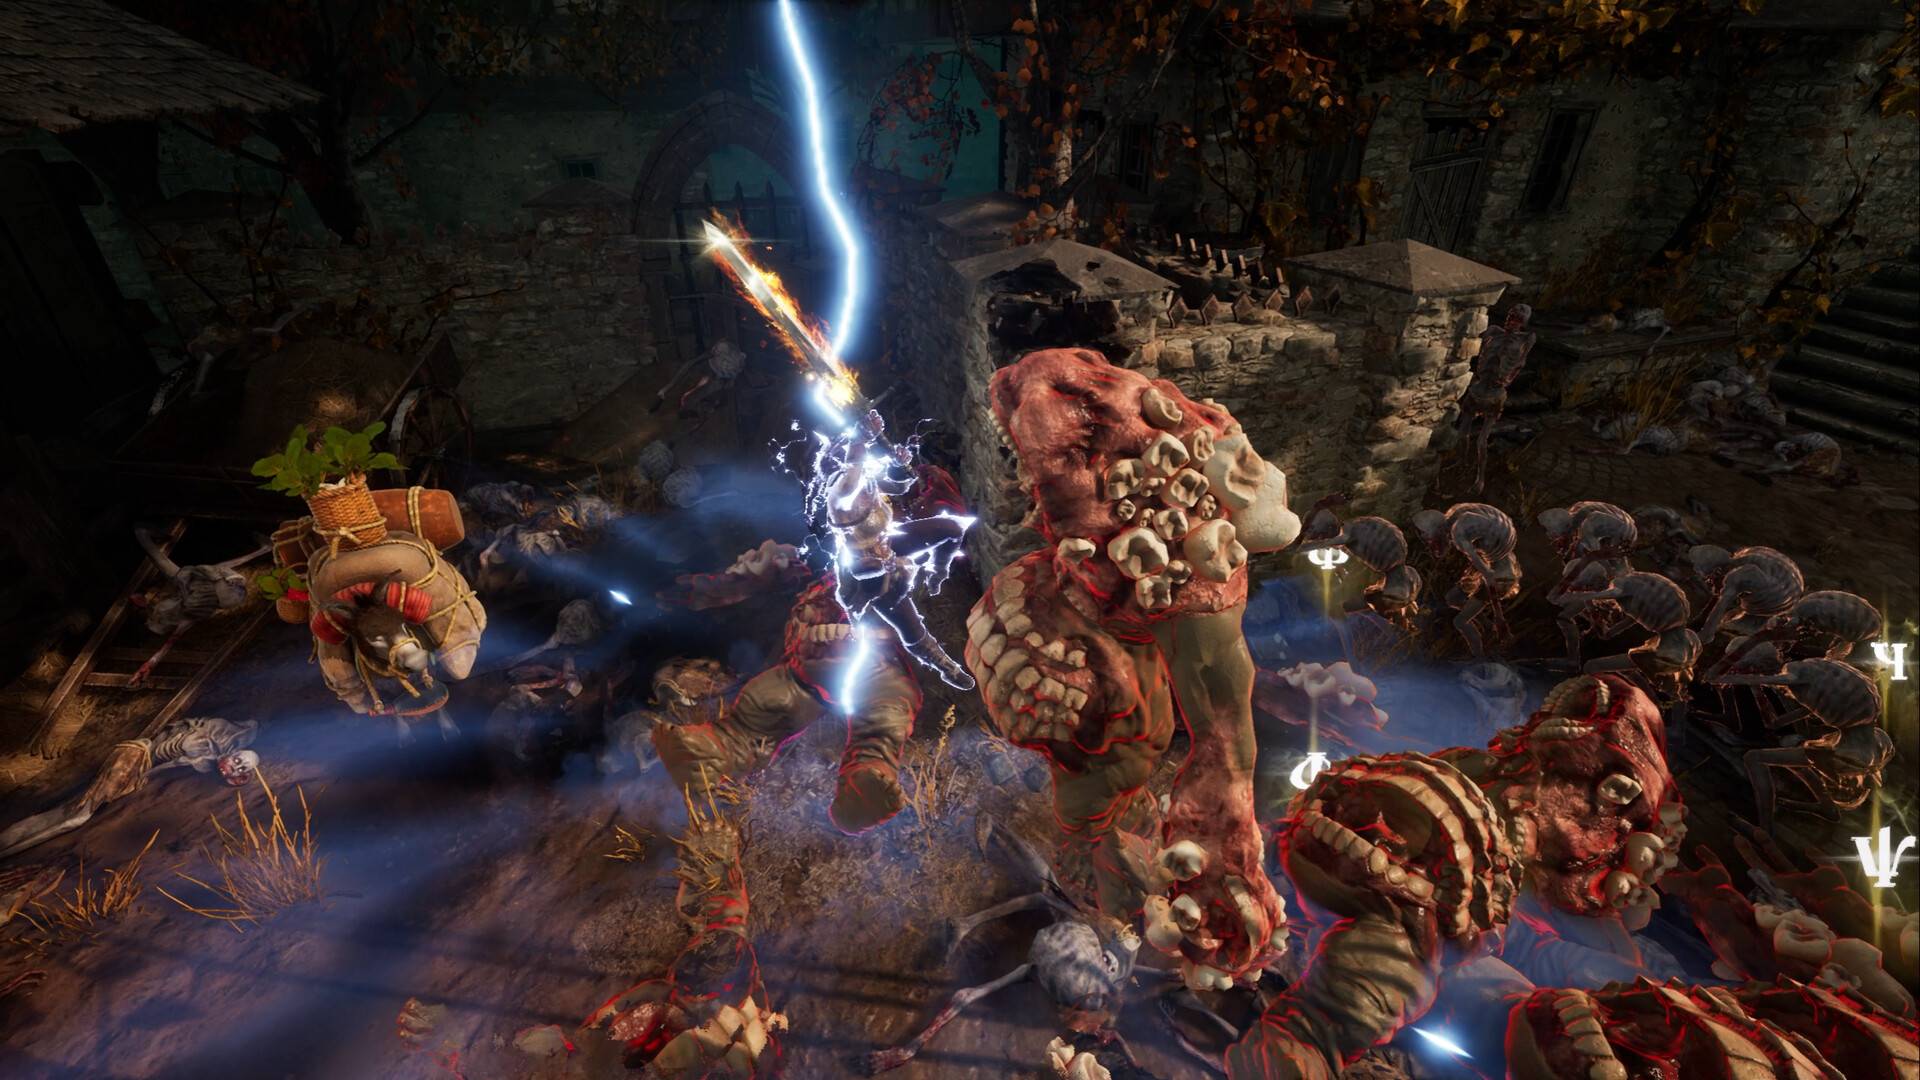 Dark Souls et Hadès se combinent dans un nouveau roguelike sanglant sur Steam : une image dans le jeu d'une femme abattant une épée sur une énorme et horrible créature mutante.